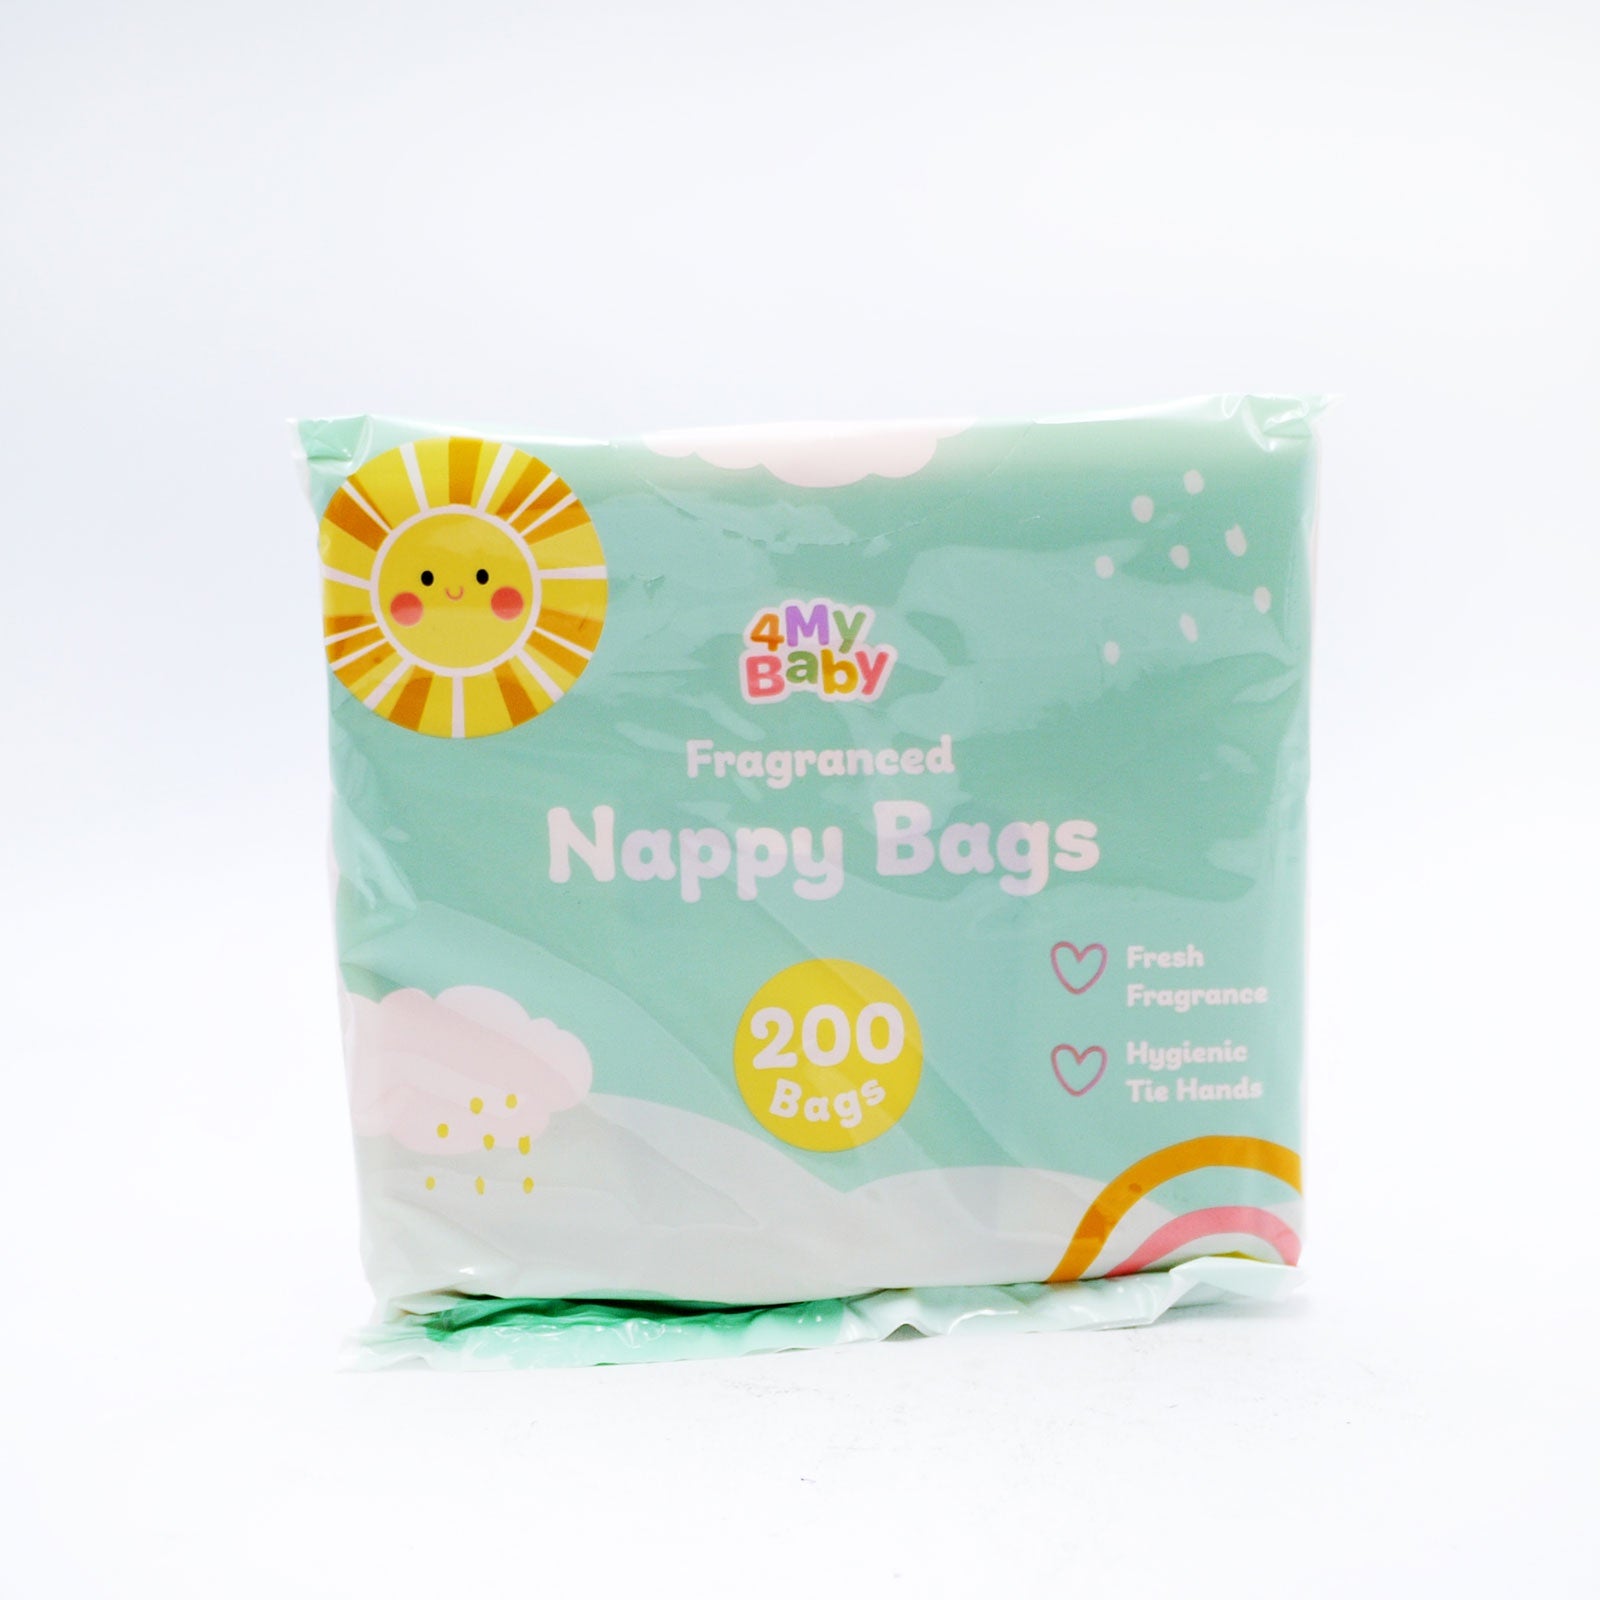 4MyBaby Nappy Bags 200pk